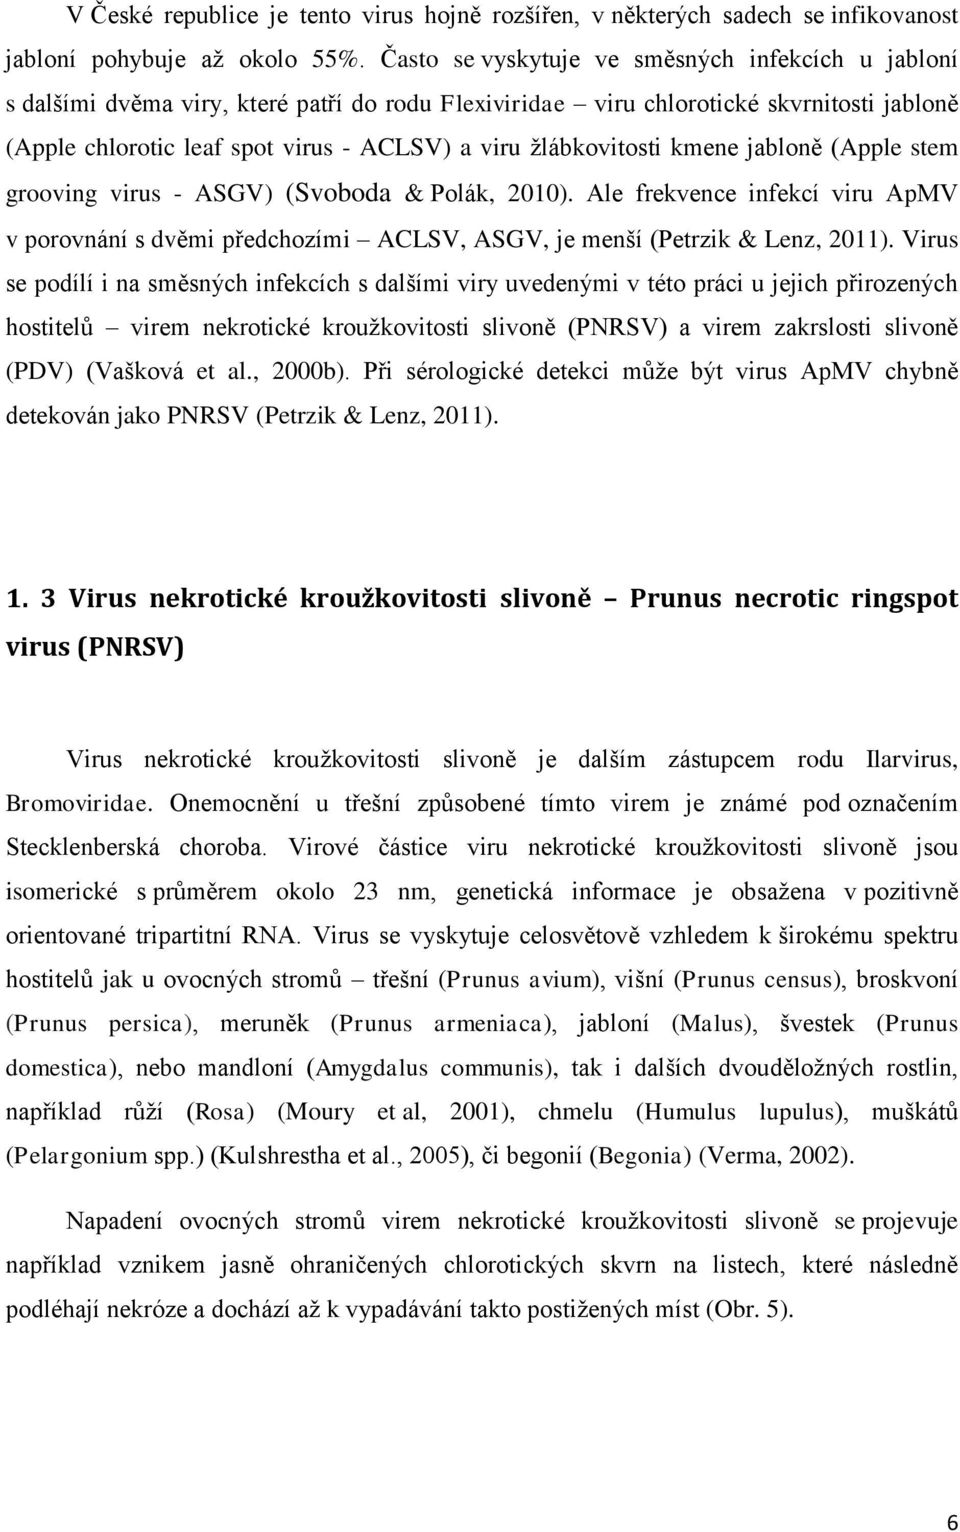 žlábkovitosti kmene jabloně (Apple stem grooving virus - ASGV) (Svoboda & Polák, 2010). Ale frekvence infekcí viru ApMV v porovnání s dvěmi předchozími ACLSV, ASGV, je menší (Petrzik & Lenz, 2011).